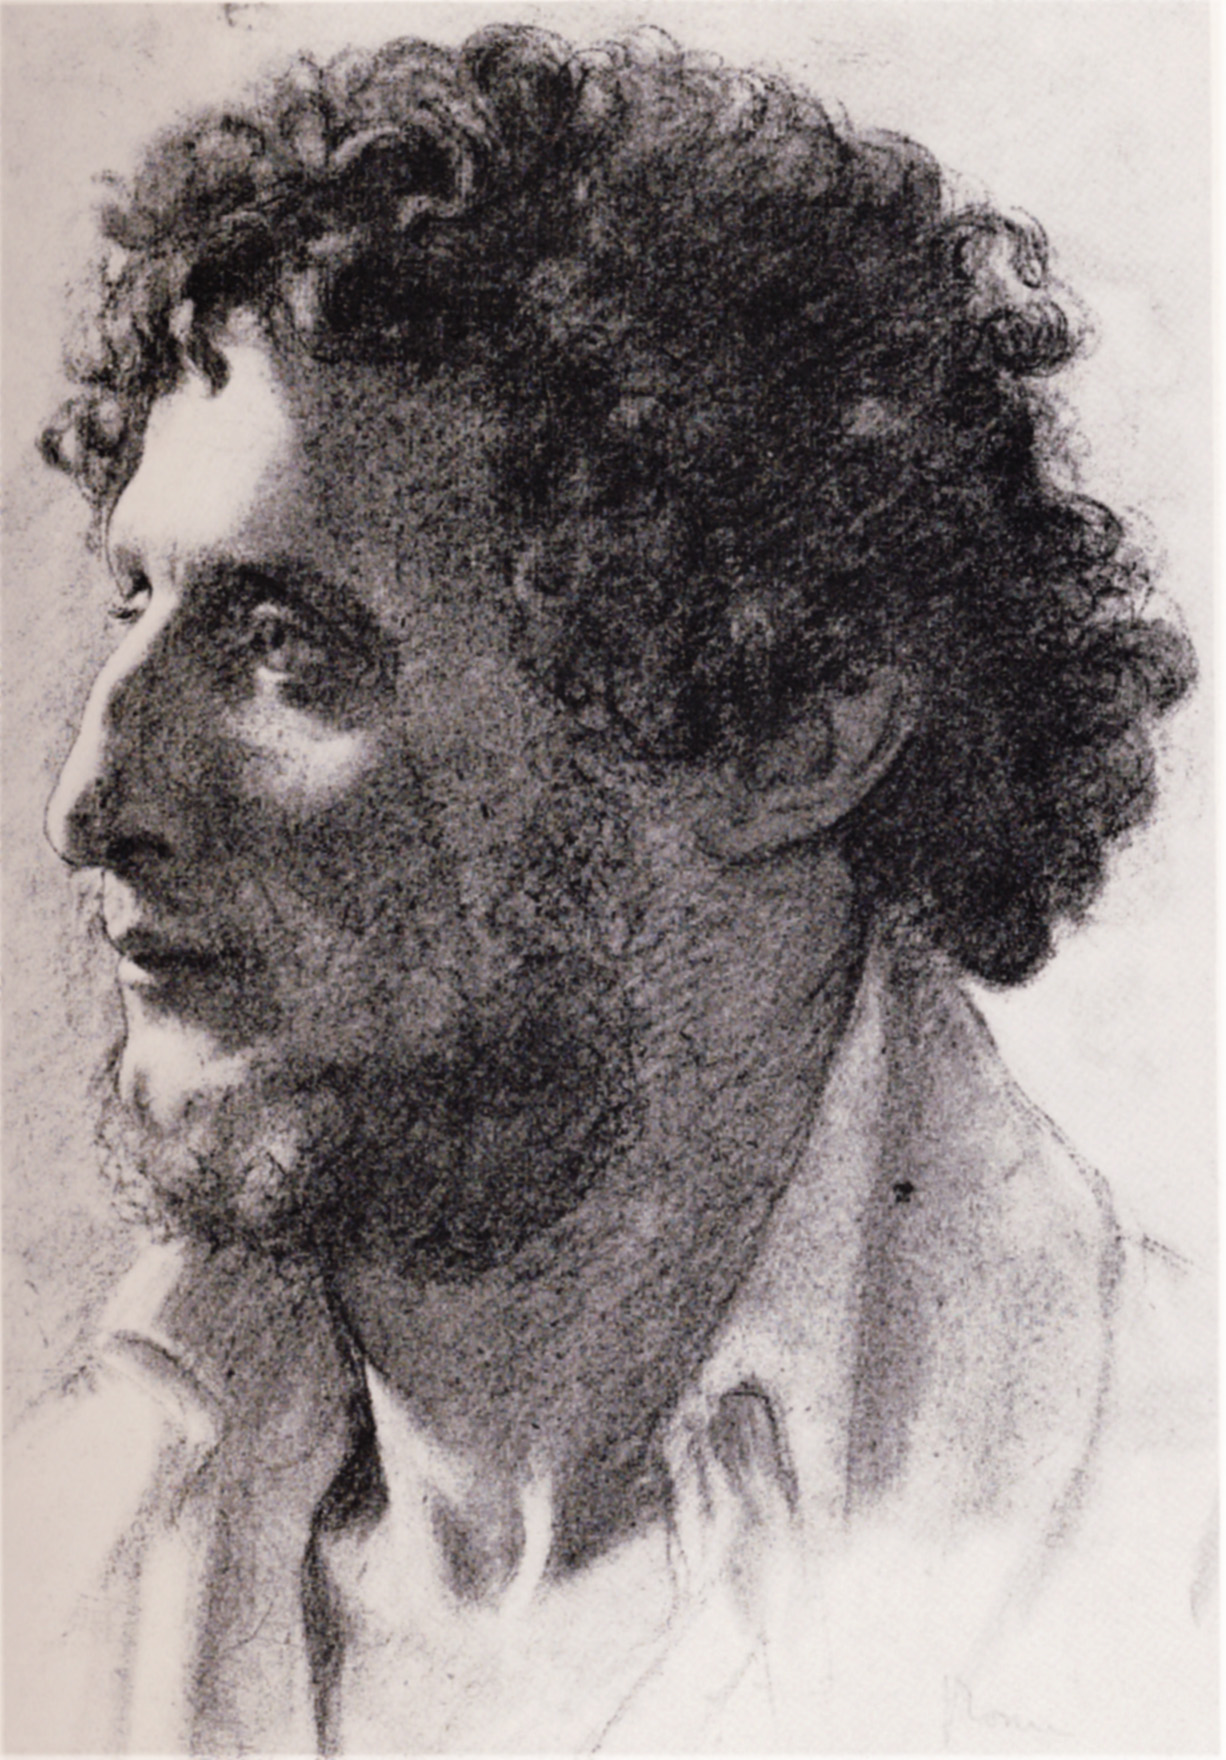 Эдгар Дега. "Портрет итальянца". 1856.